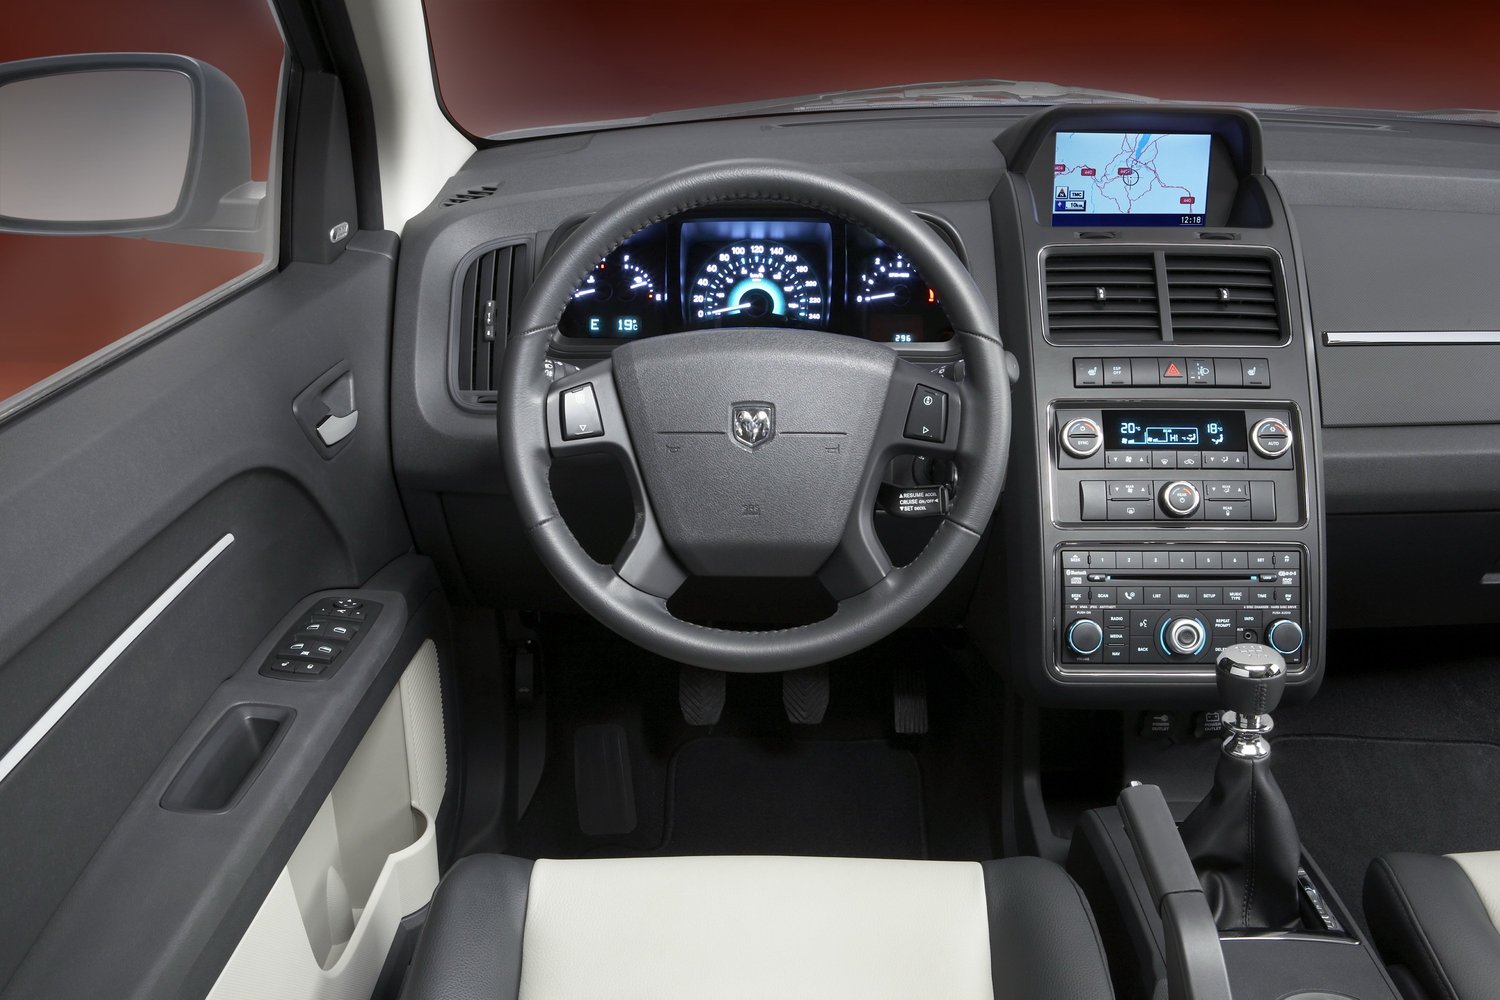 кроссовер Dodge Journey 2008 - 2016г выпуска модификация 2.0 MT (170 л.с.)